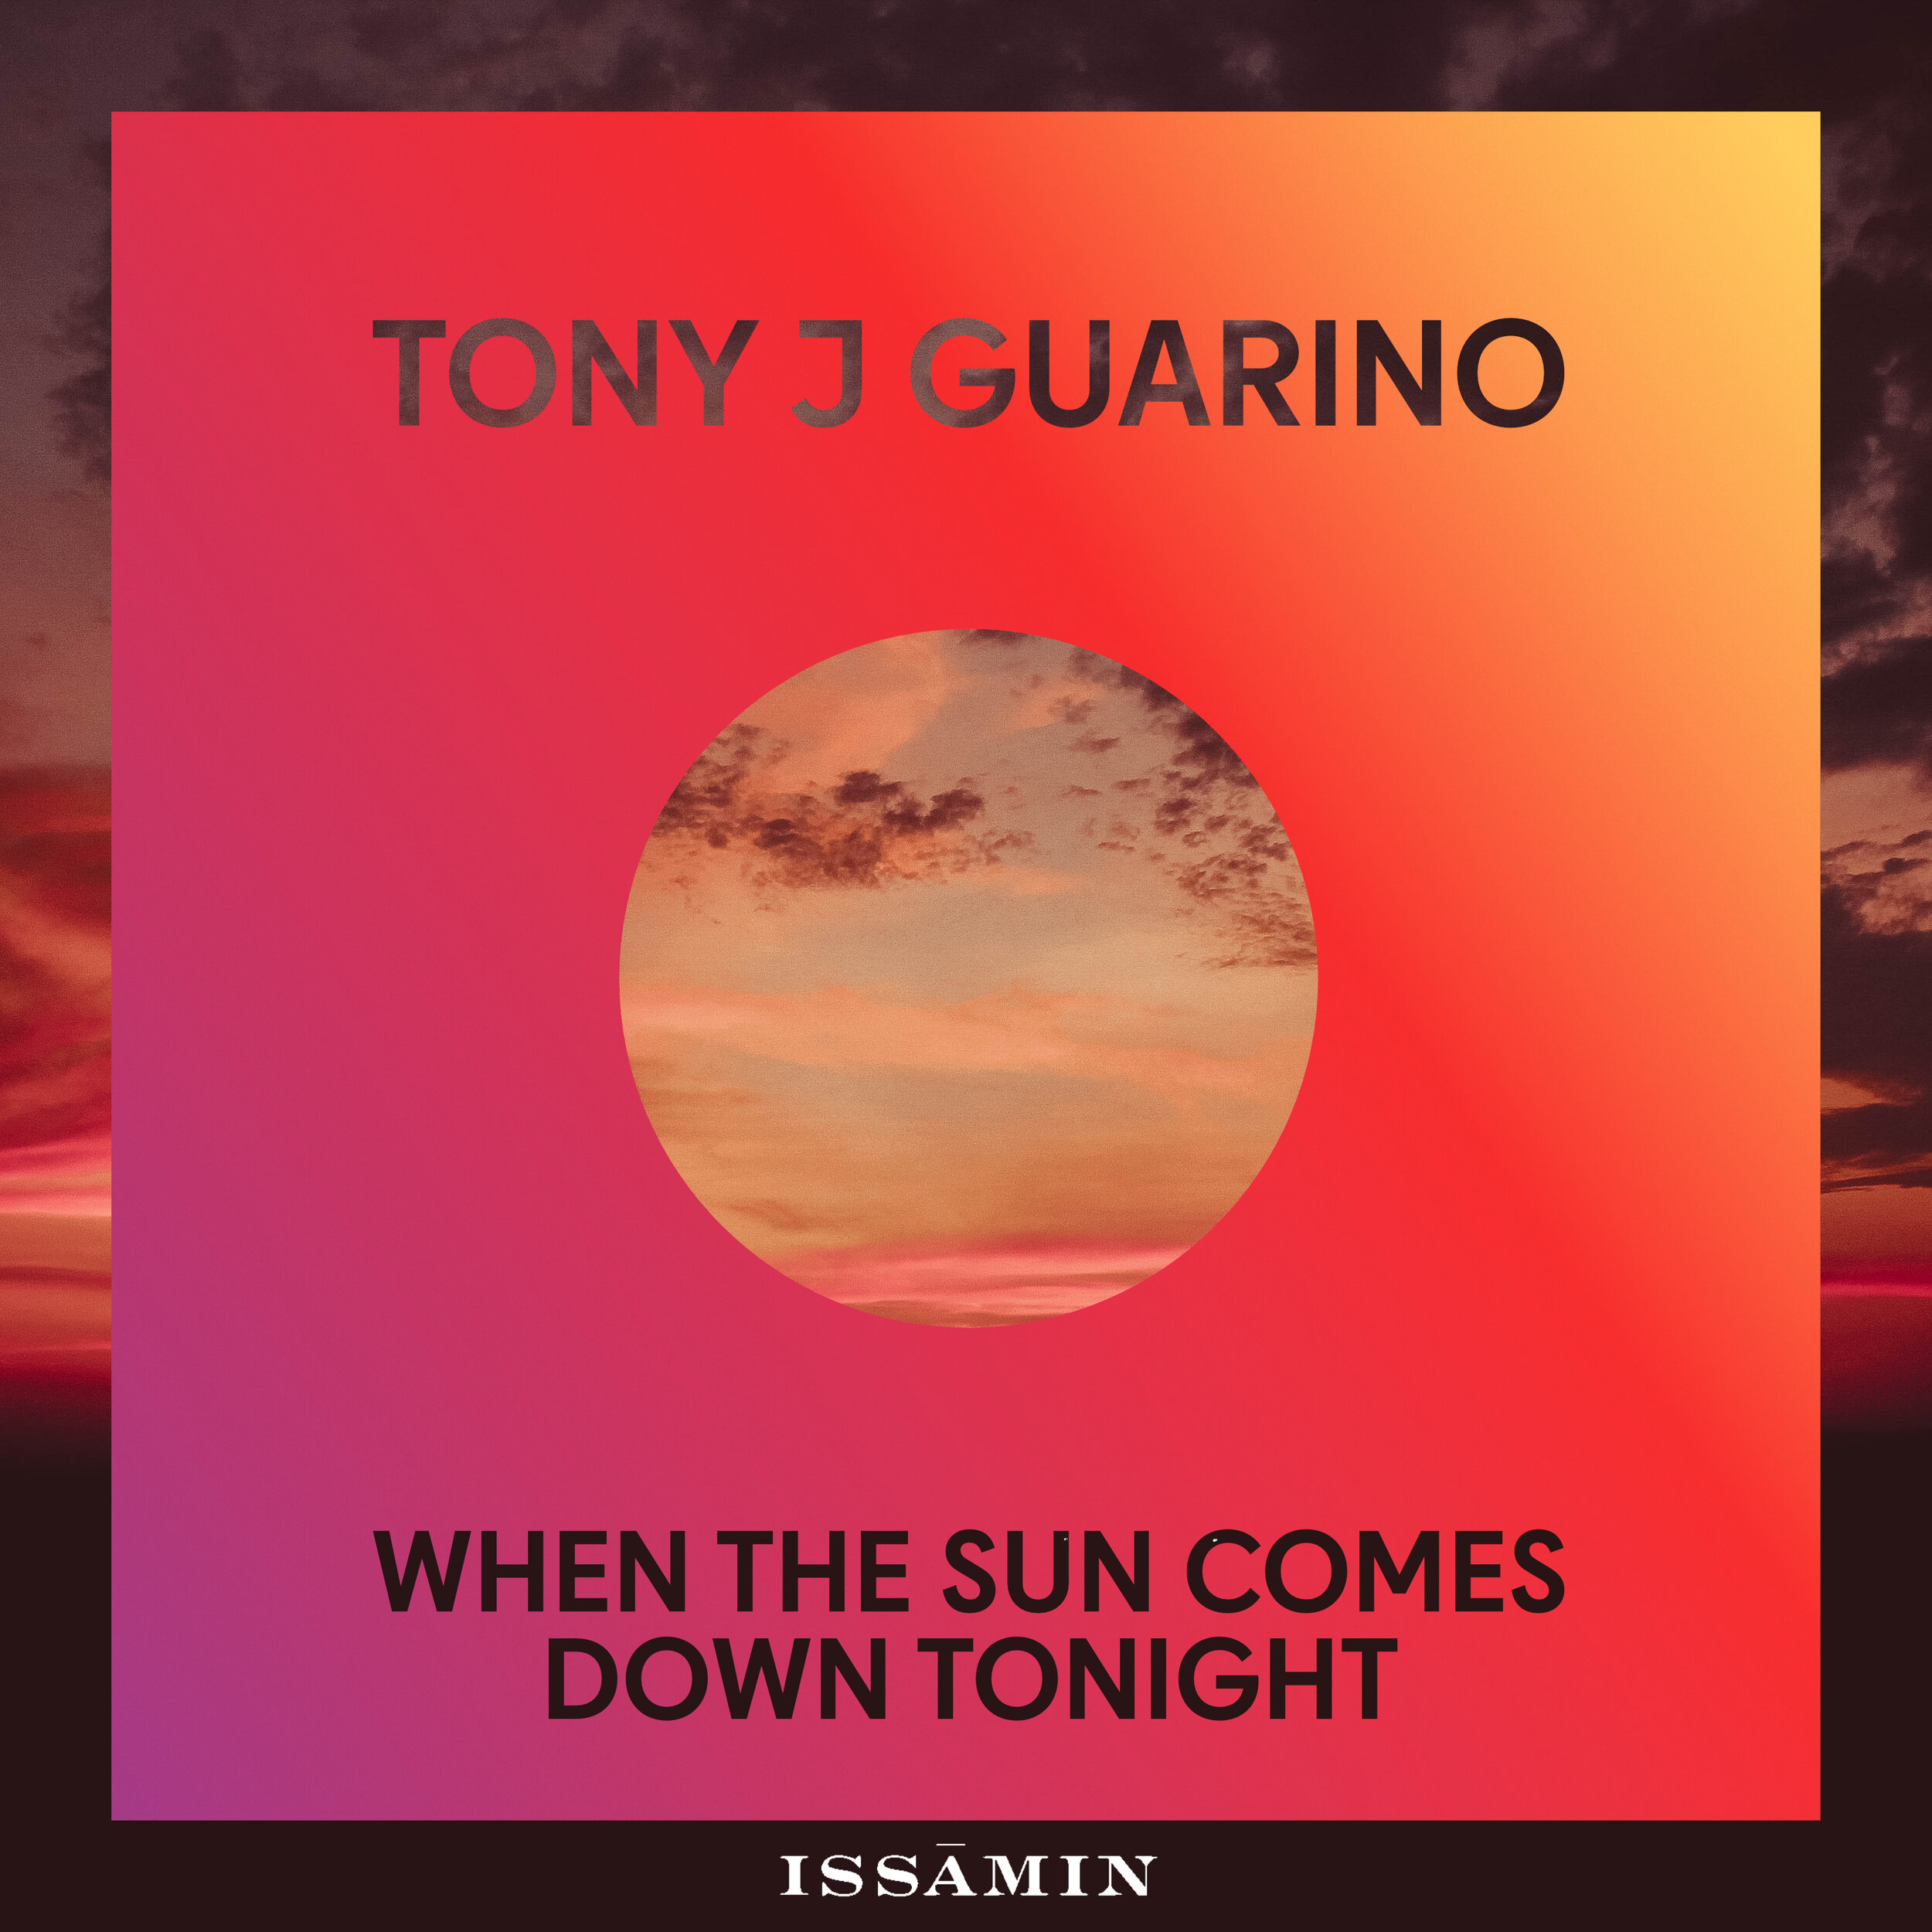 Tony J Guarino - When The Sun Comes Down Tonight Artwork.jpg